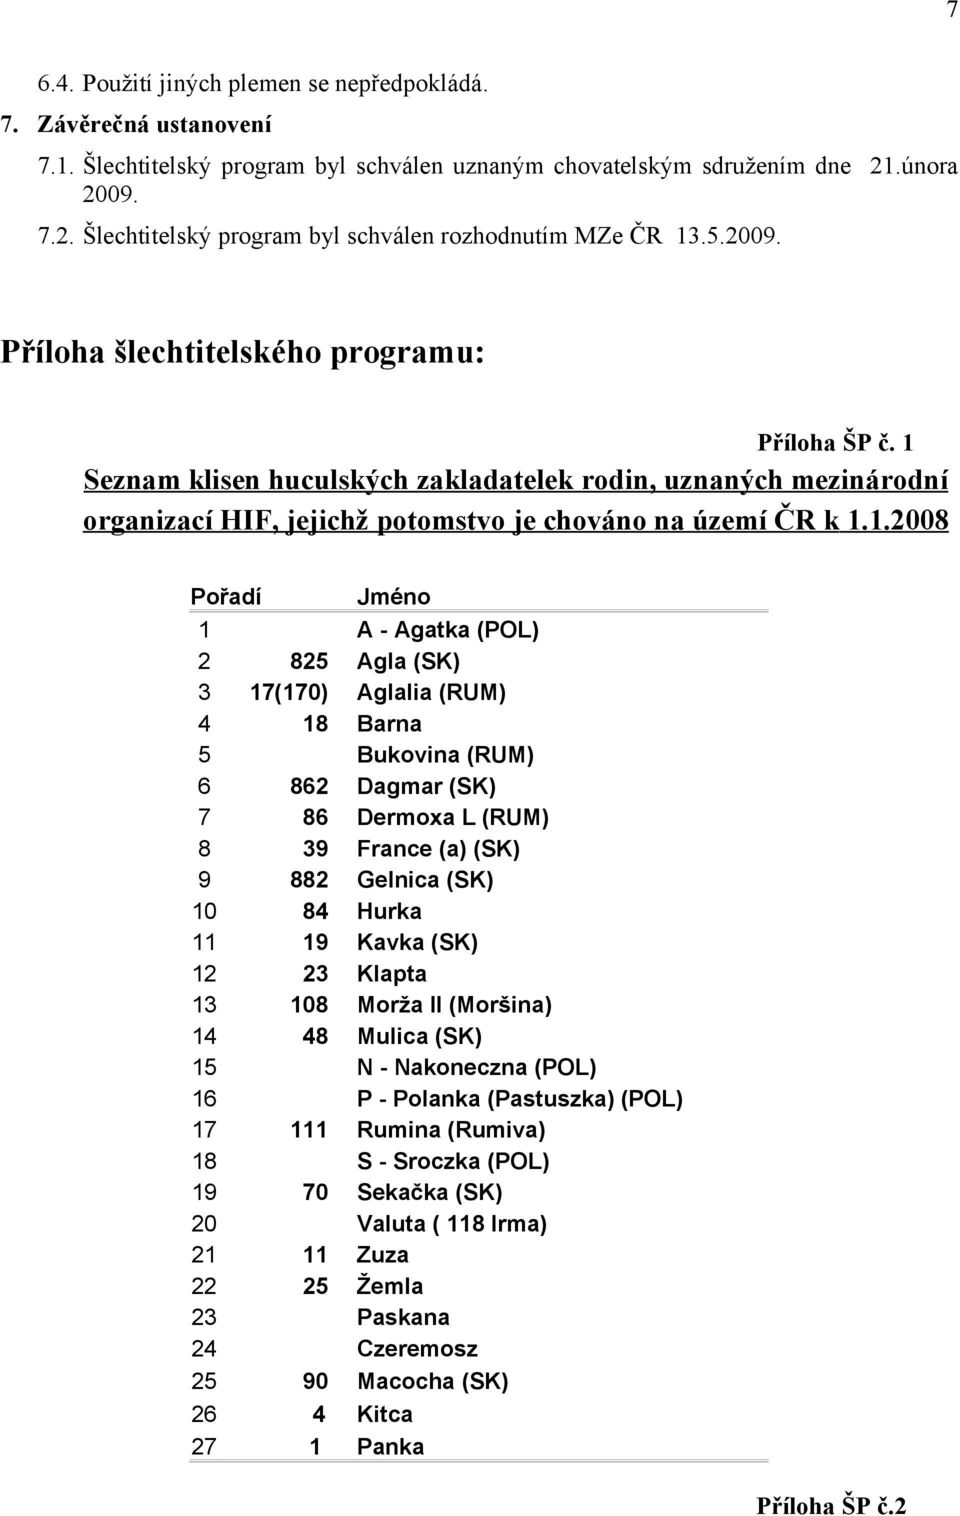 1 Seznam klisen huculských zakladatelek rodin, uznaných mezinárodní organizací HIF, jejichž potomstvo je chováno na území ČR k 1.1.2008 Pořadí Jméno 1 A - Agatka (POL) 2 825 Agla (SK) 3 17(170)